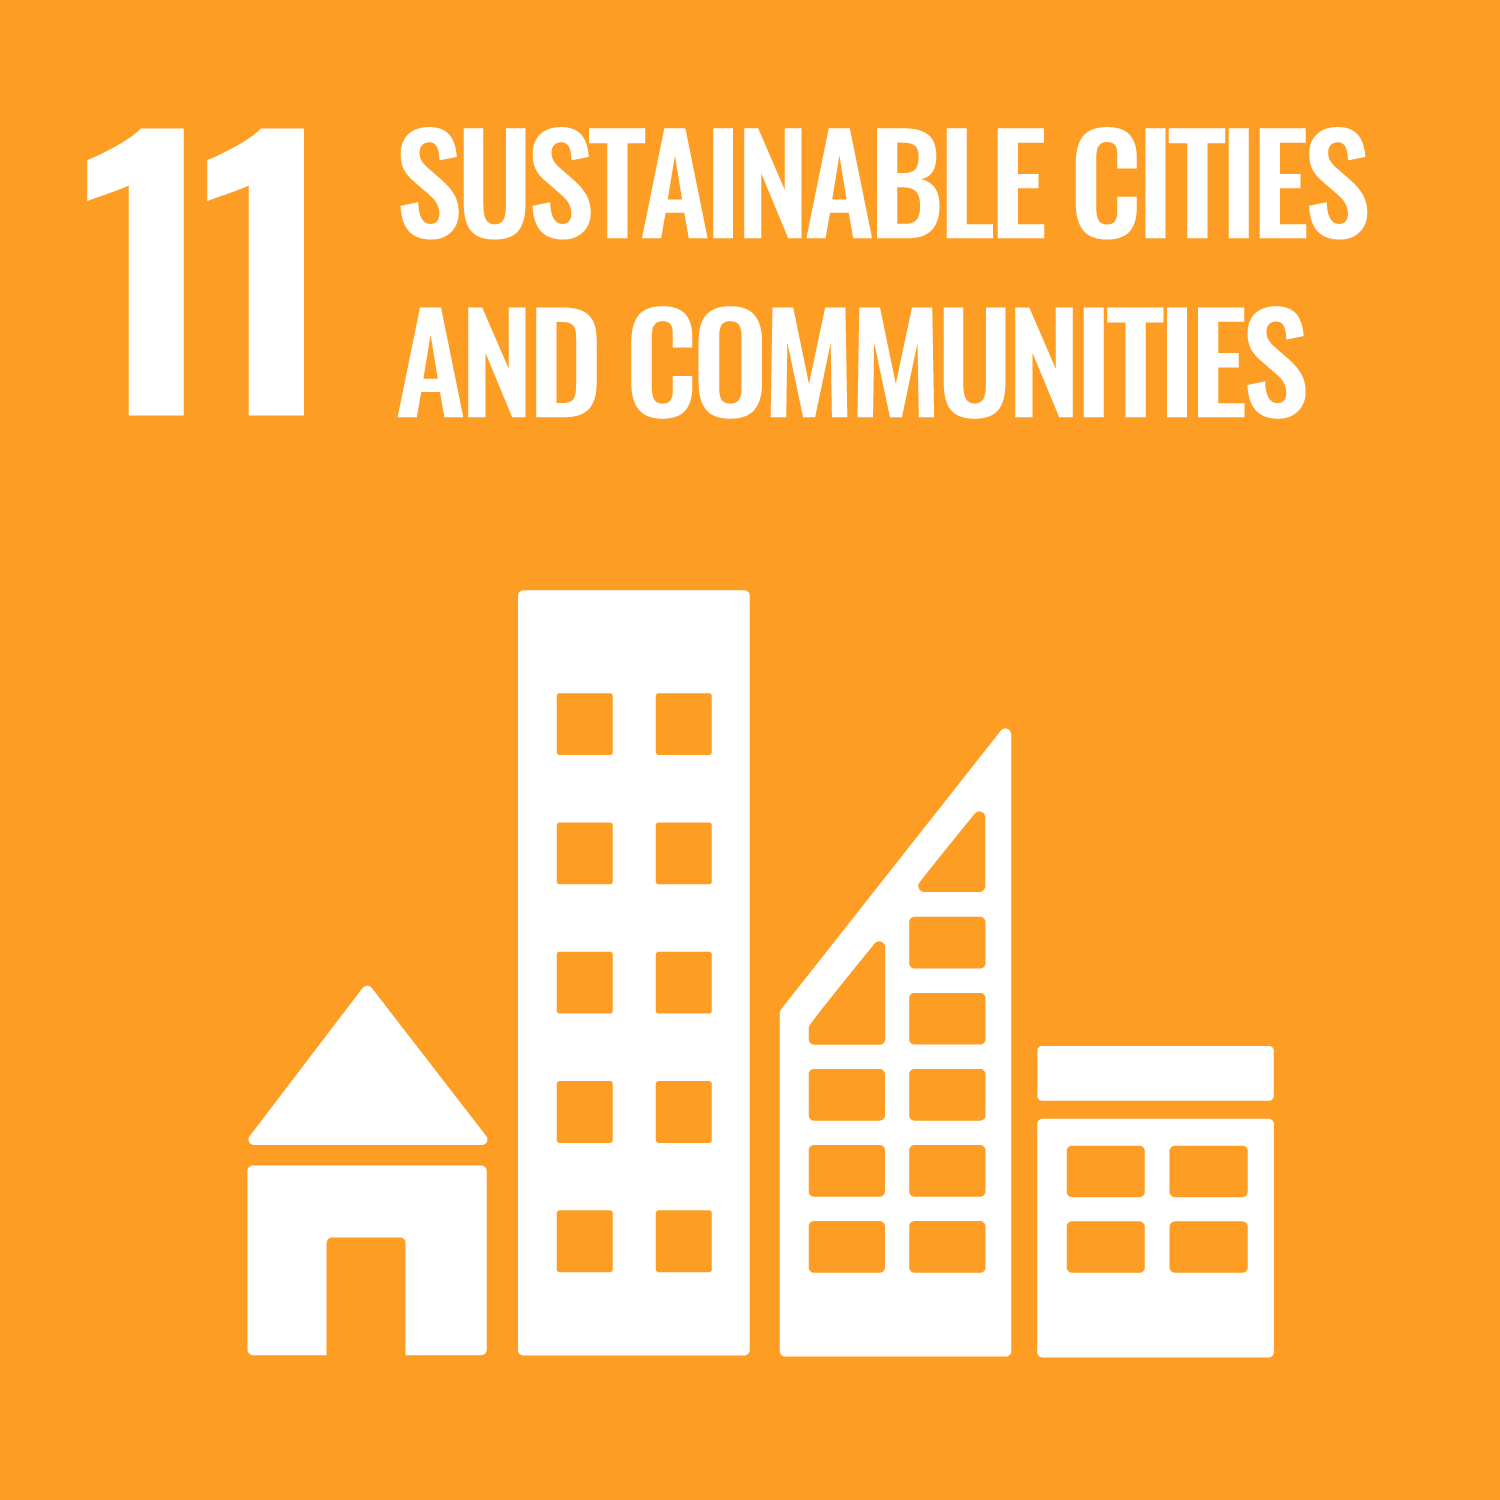 11 Sustainable Cities & Communities (UN Goal)